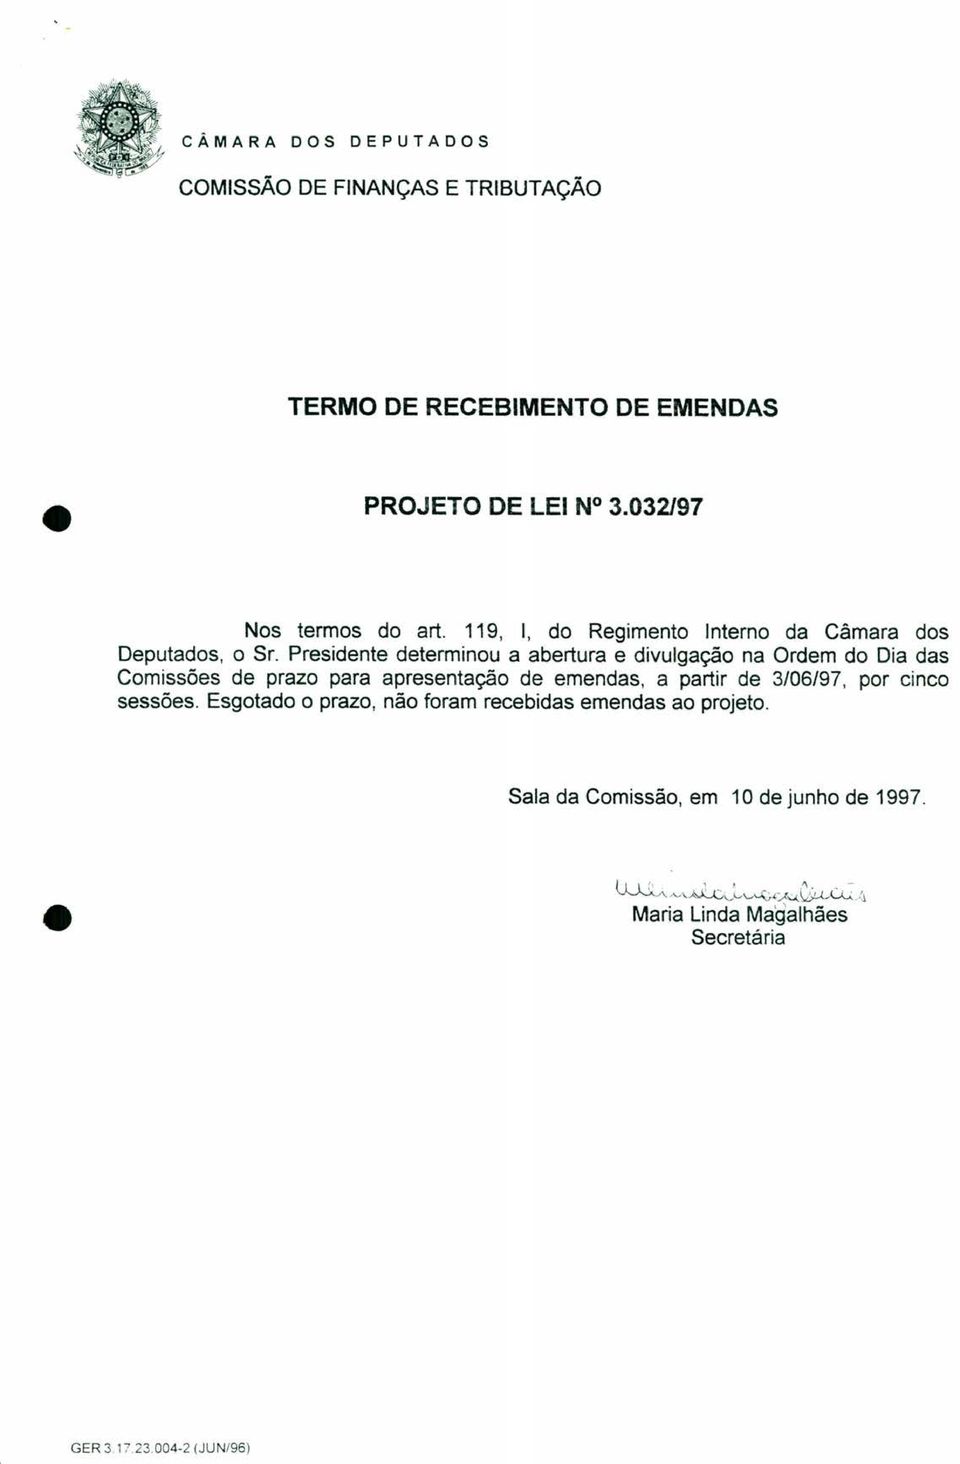 Presidente determinou a abertura e divulgação na Ordem do Dia das Comissões de prazo para apresentação de emendas, a partir de 3/06/97, por